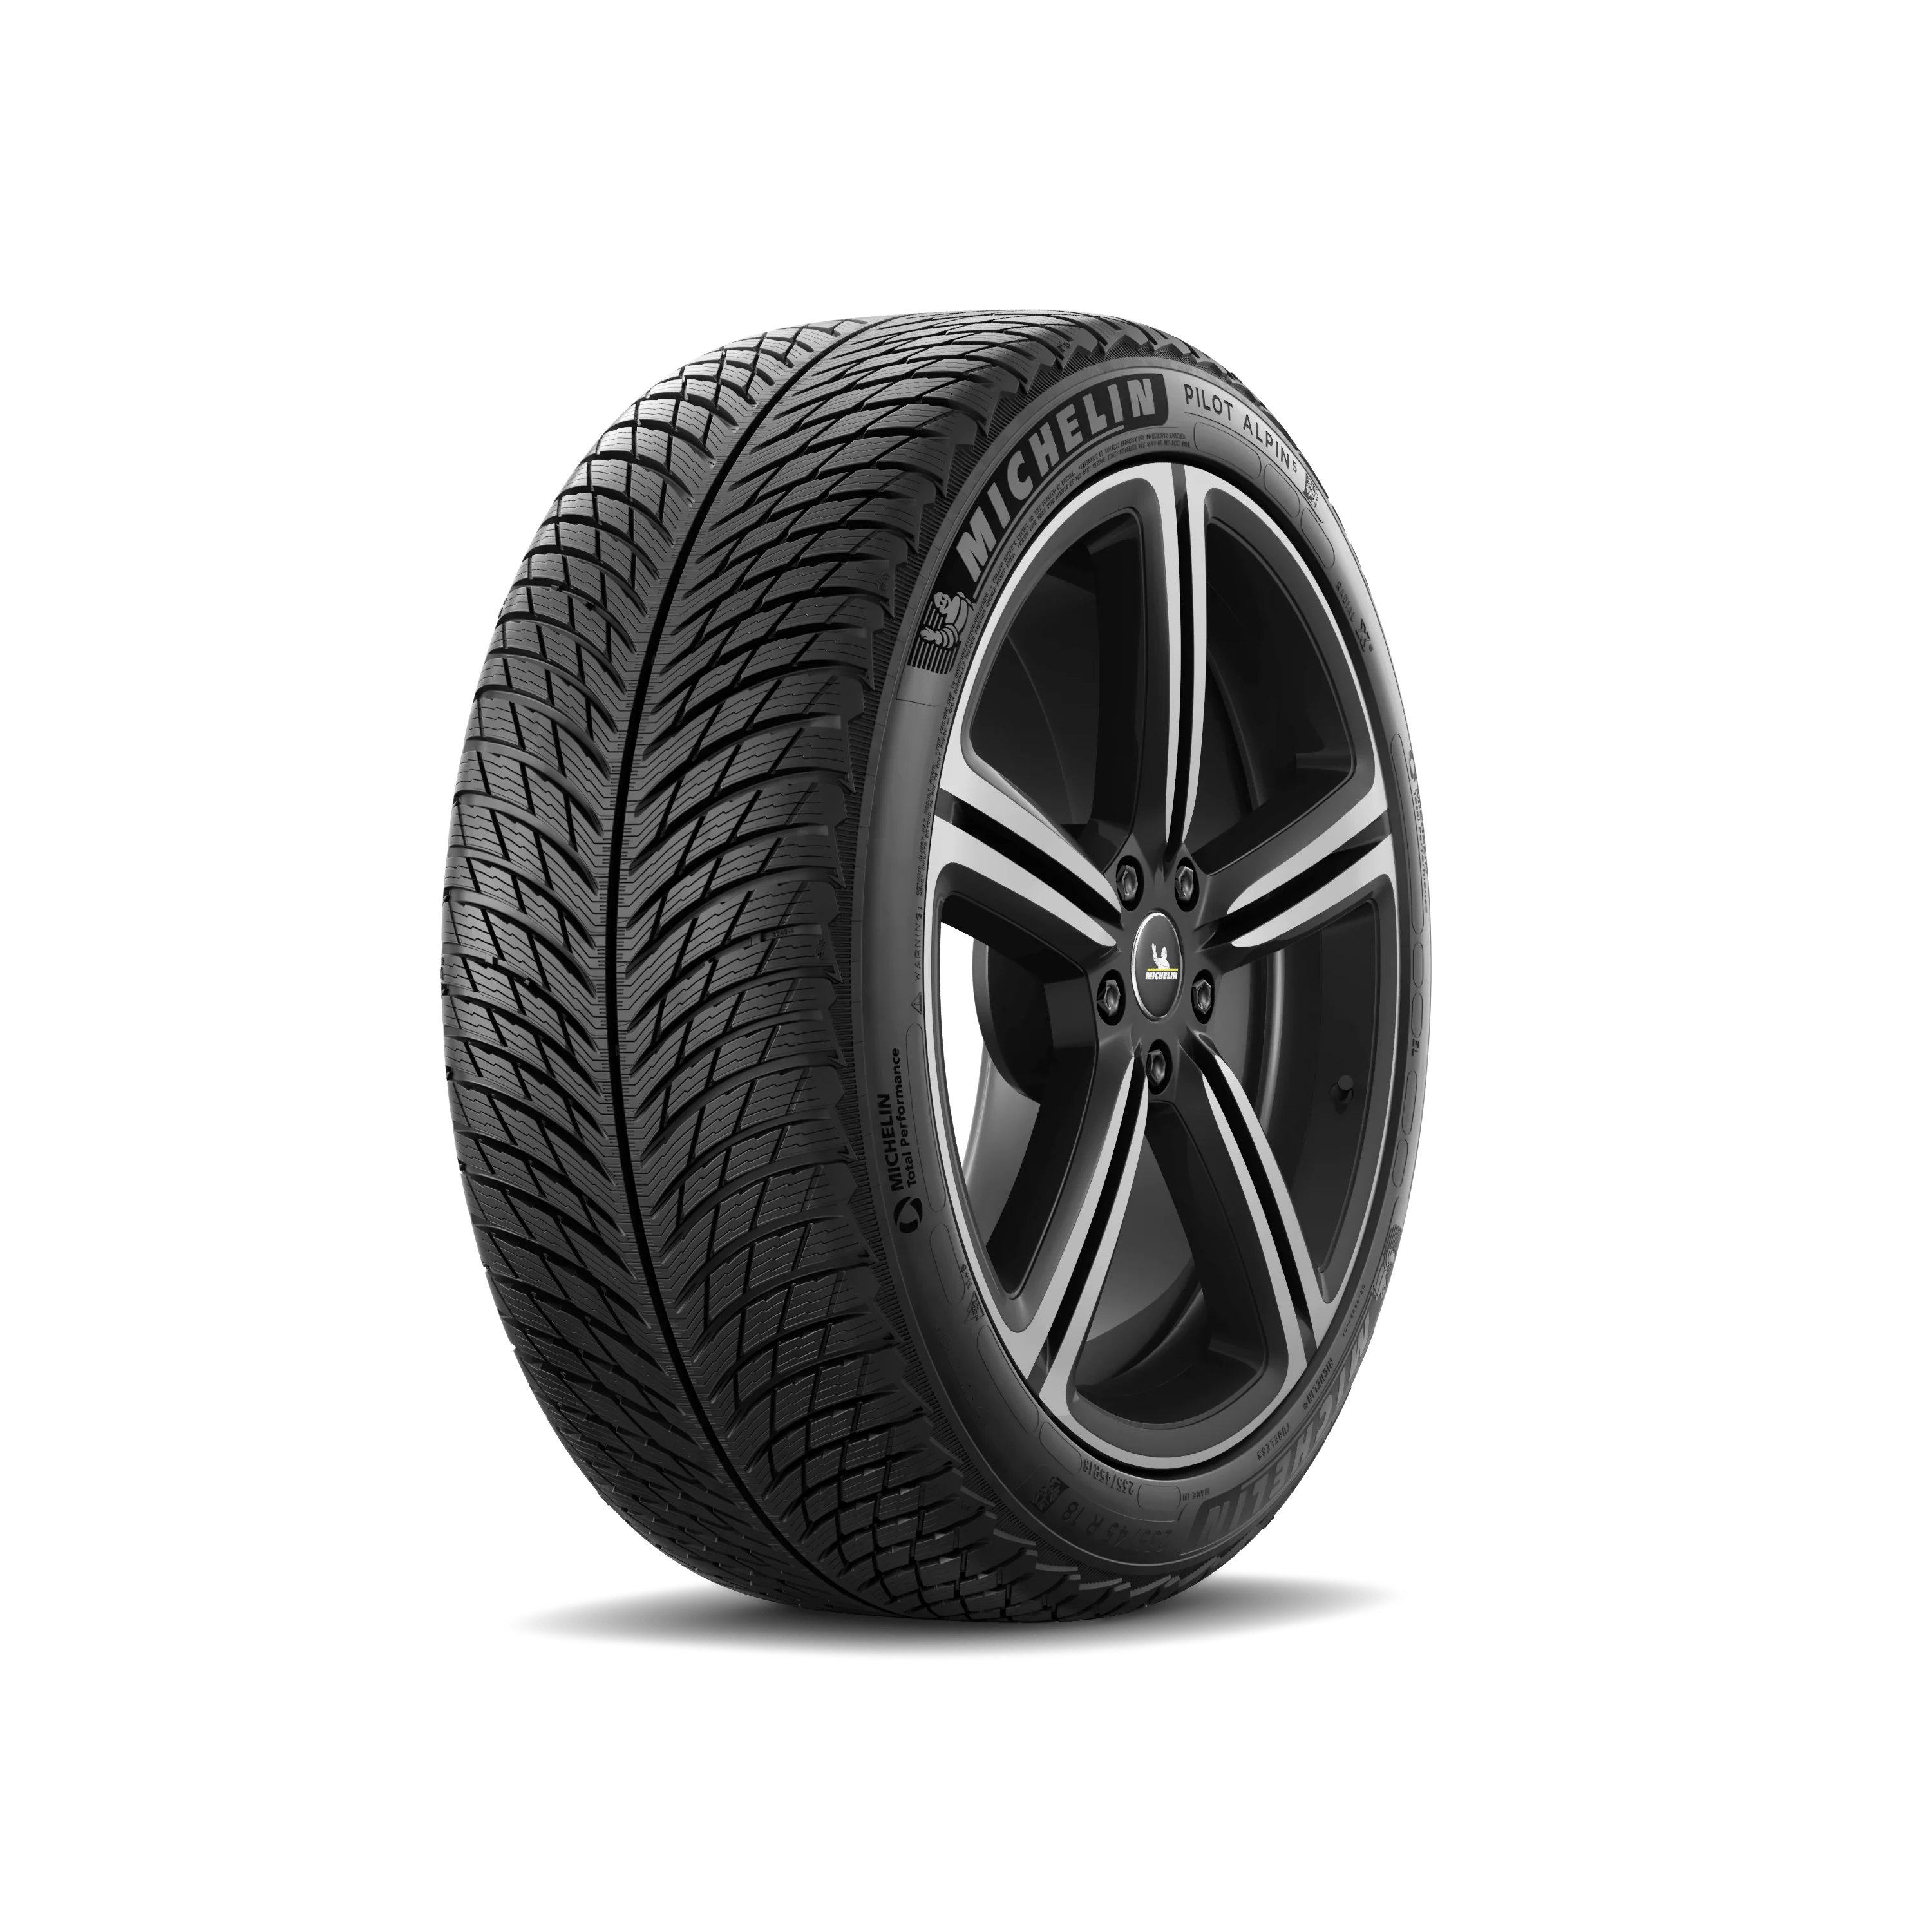 Michelin Michelin 225/50 R18 99V Pilotalpin5 XL pneumatici nuovi Invernale 